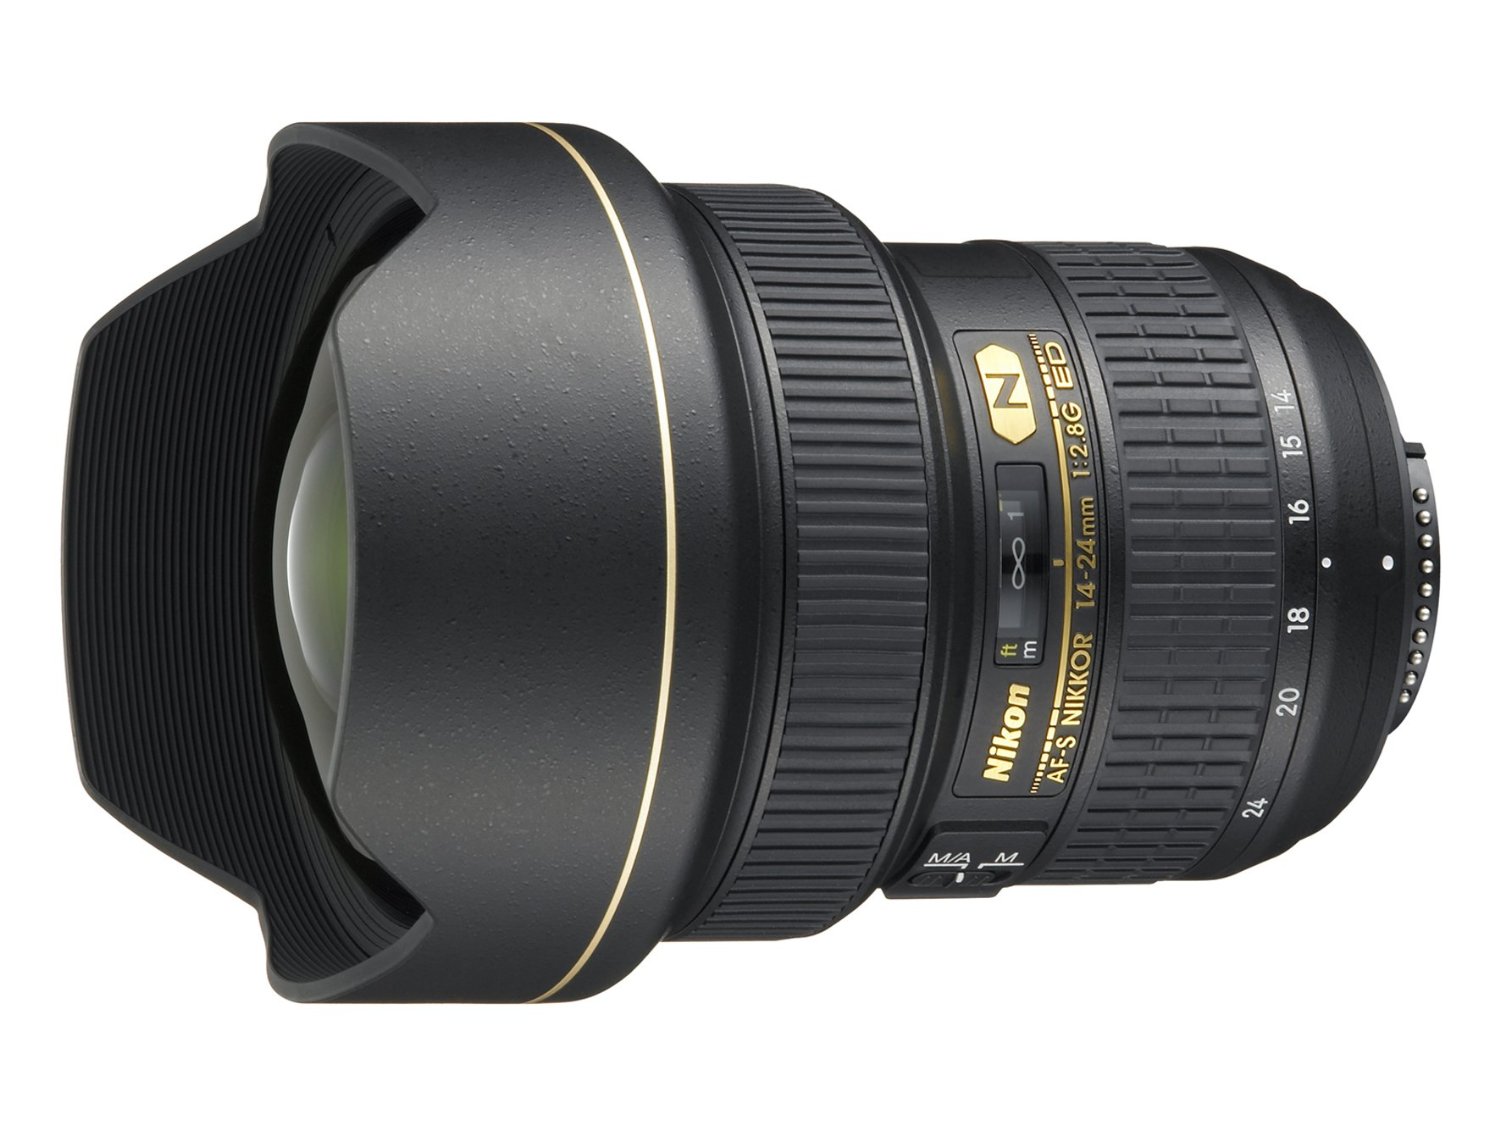 Nikon AF-S FX NIKKOR 14-24mm f / 2.8G ED зум-объектив с автофокусом для цифровых зеркальных фотоаппаратов